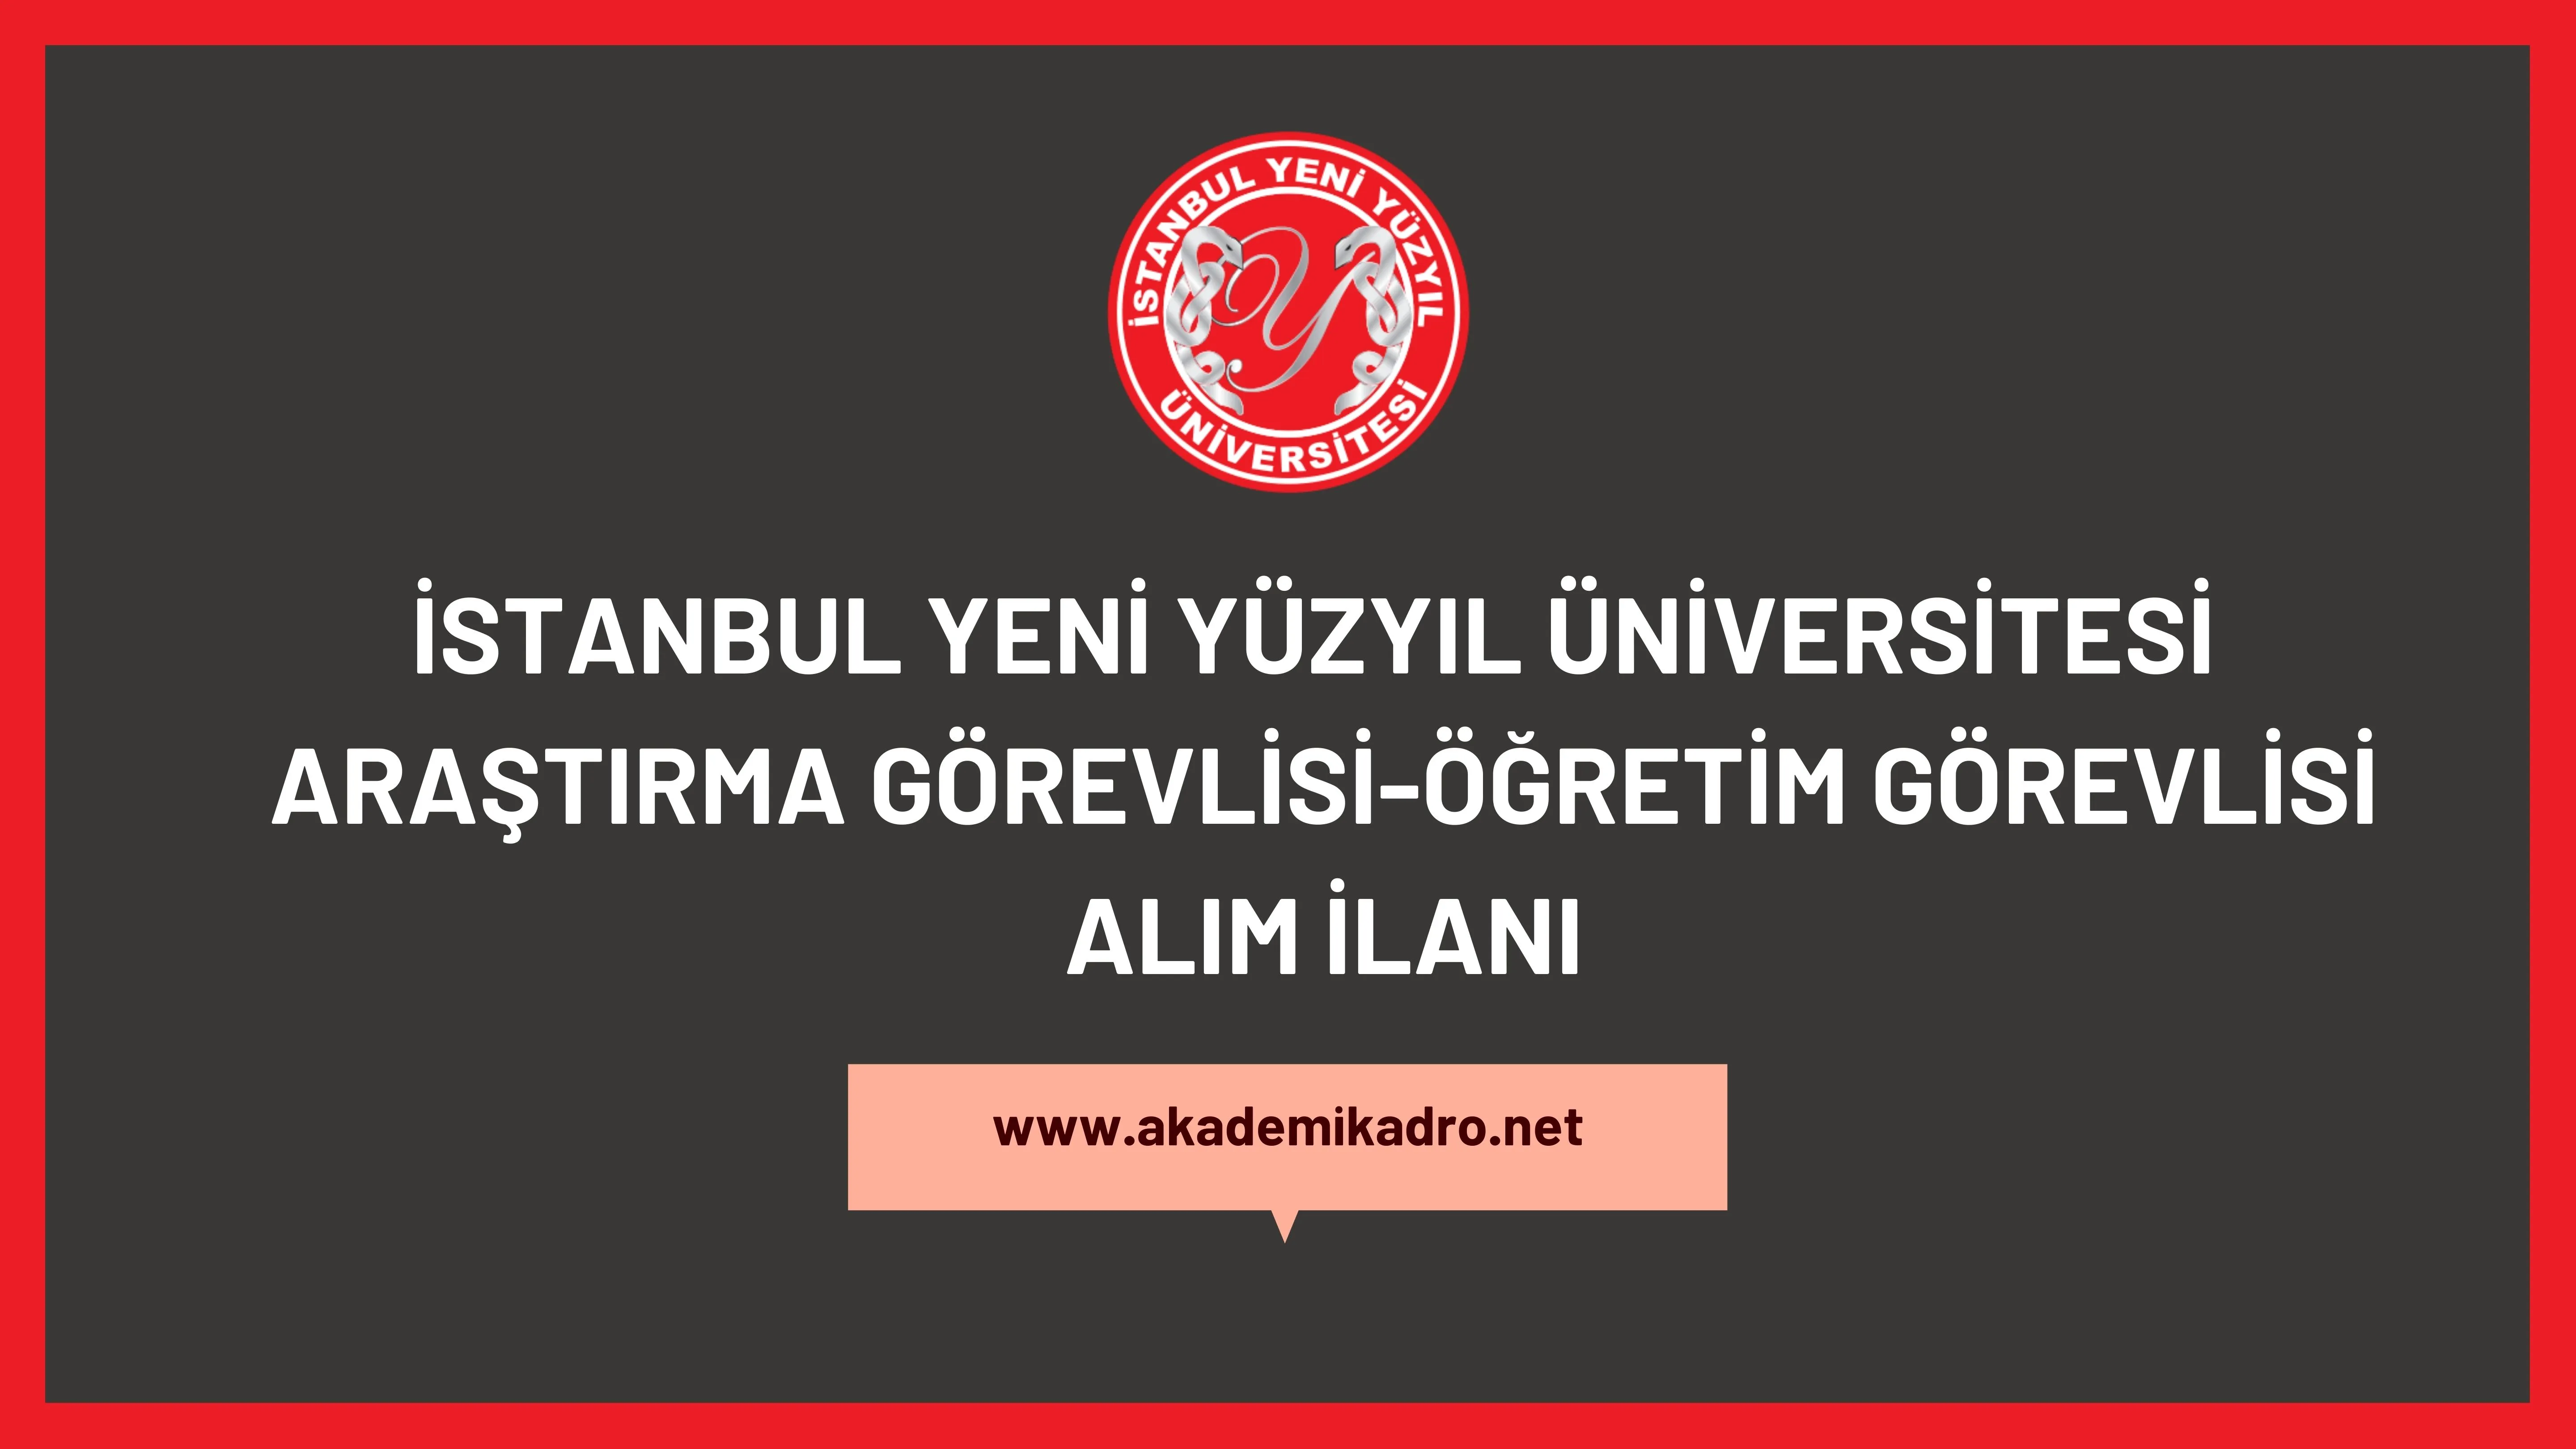 İstanbul Yeni Yüzyıl Üniversitesi 2 Profesör, 2 Doçent ve 6 Doktor Öğretim Üyesi Olmak Üzere 10 Akademik Personel Alacak